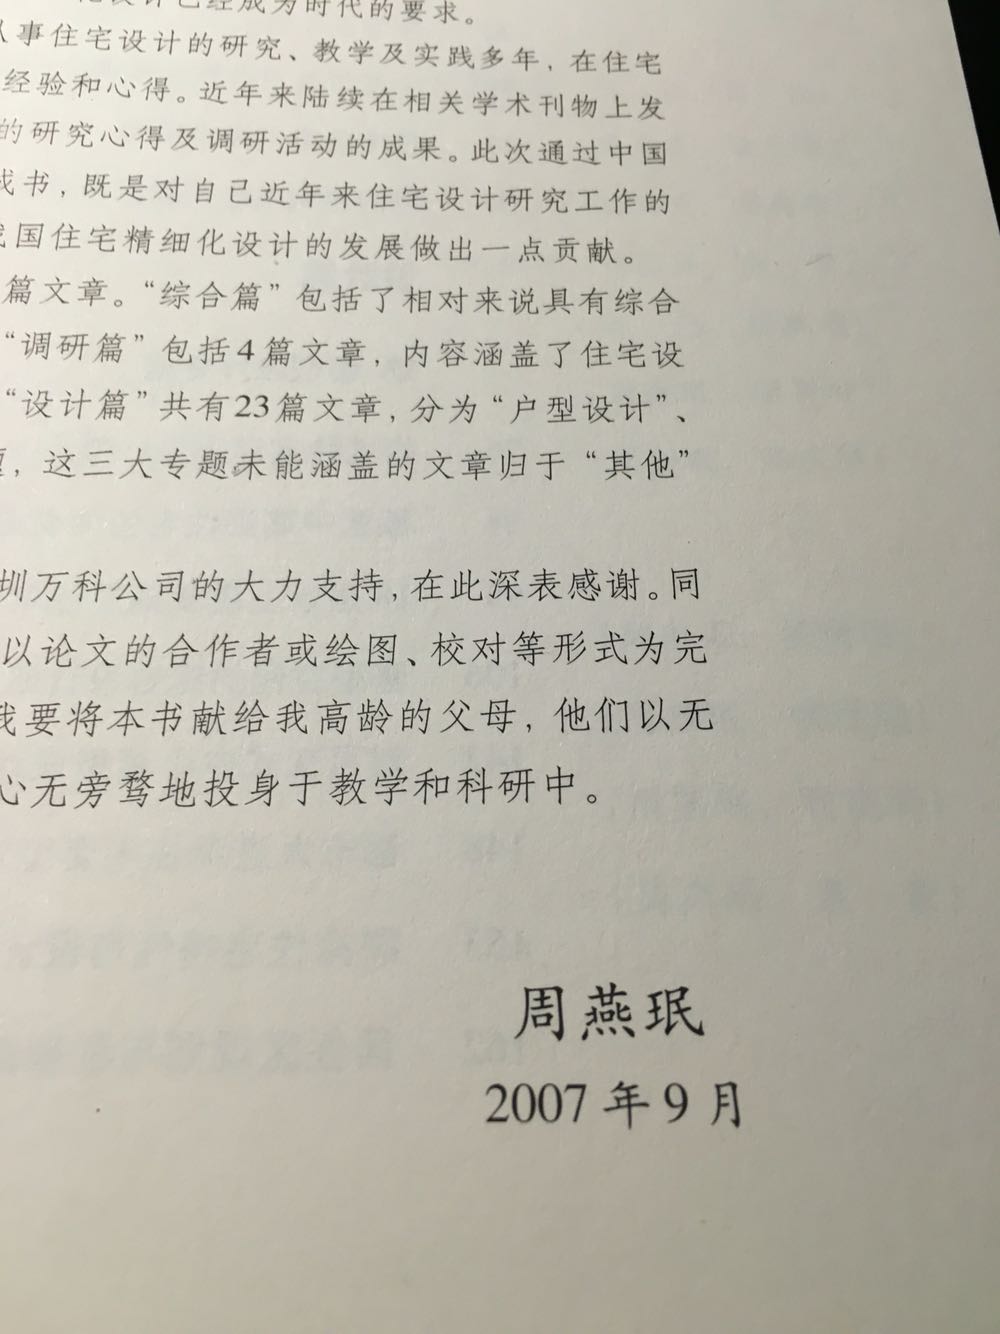 07年的书了，其中有一些内容有点过时，而且主要针对北方住宅调研，跟广东的还是有出入，期待作者大更新